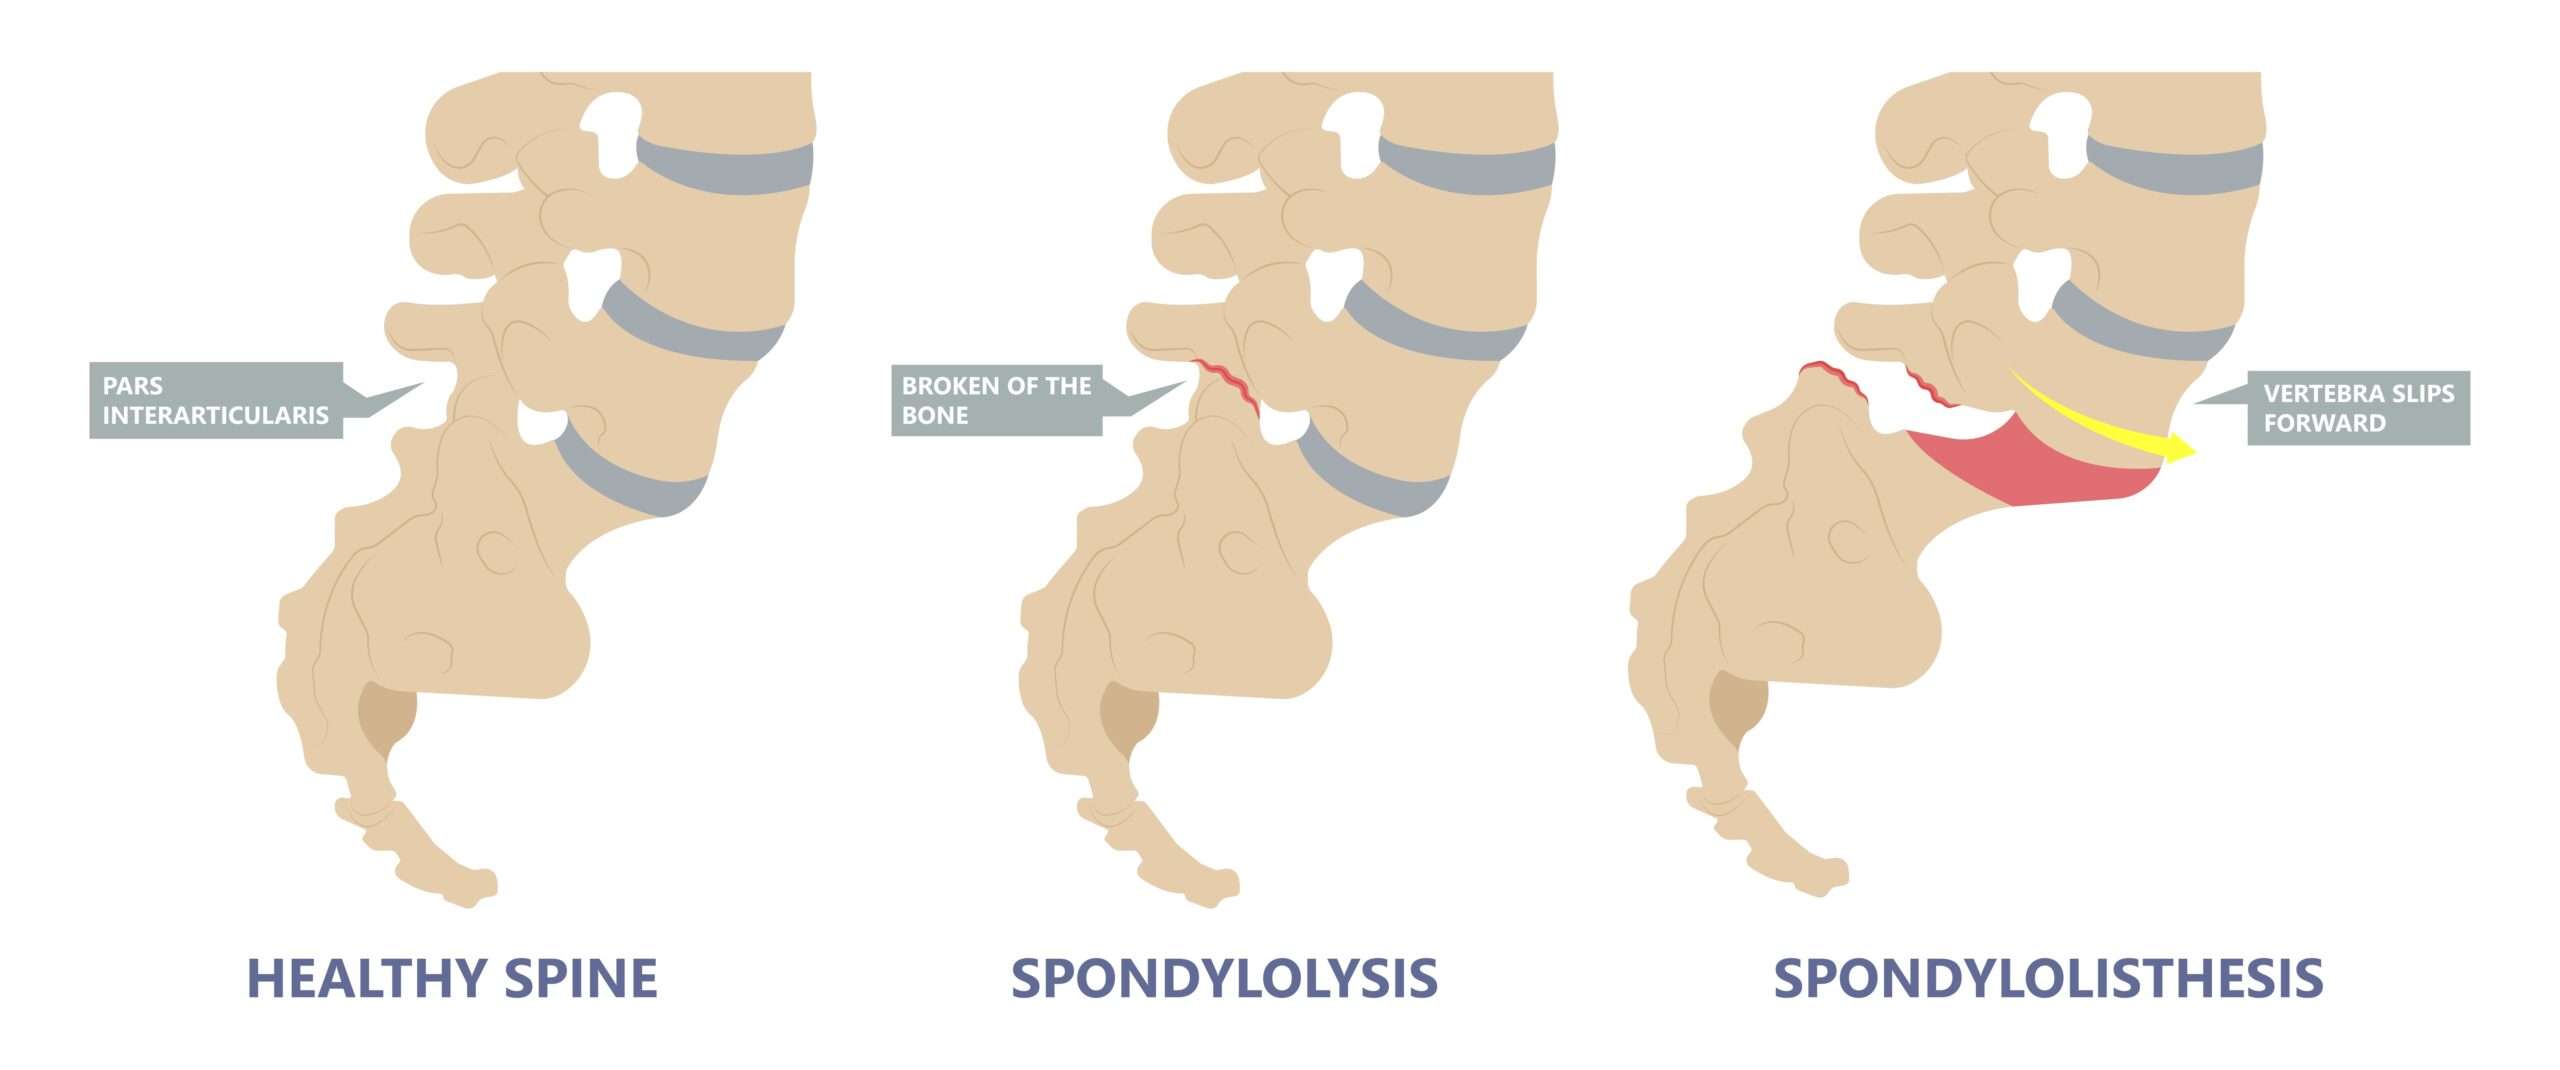 spondylosis symptoms